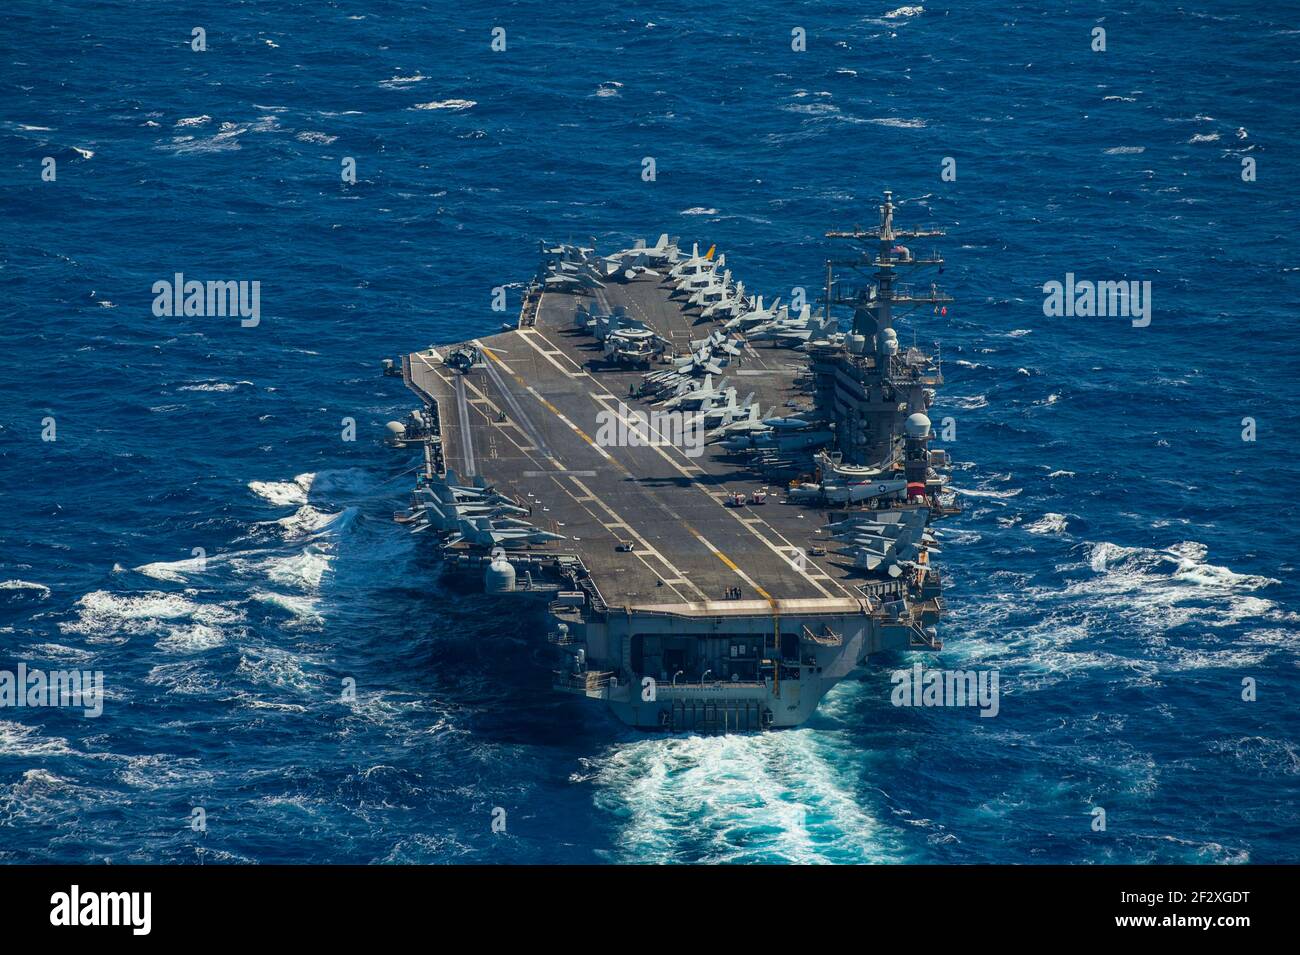 Die US Navy Nimitz-Klasse Flugzeugträger USS Dwight D. Eisenhower  durchreist das Mittelmeer auf einem routinemäßigen Einsatz in der US 6th  Flottenbereich Einsatzgebiet 11. März 2021 im Mittelmeer Stockfotografie -  Alamy